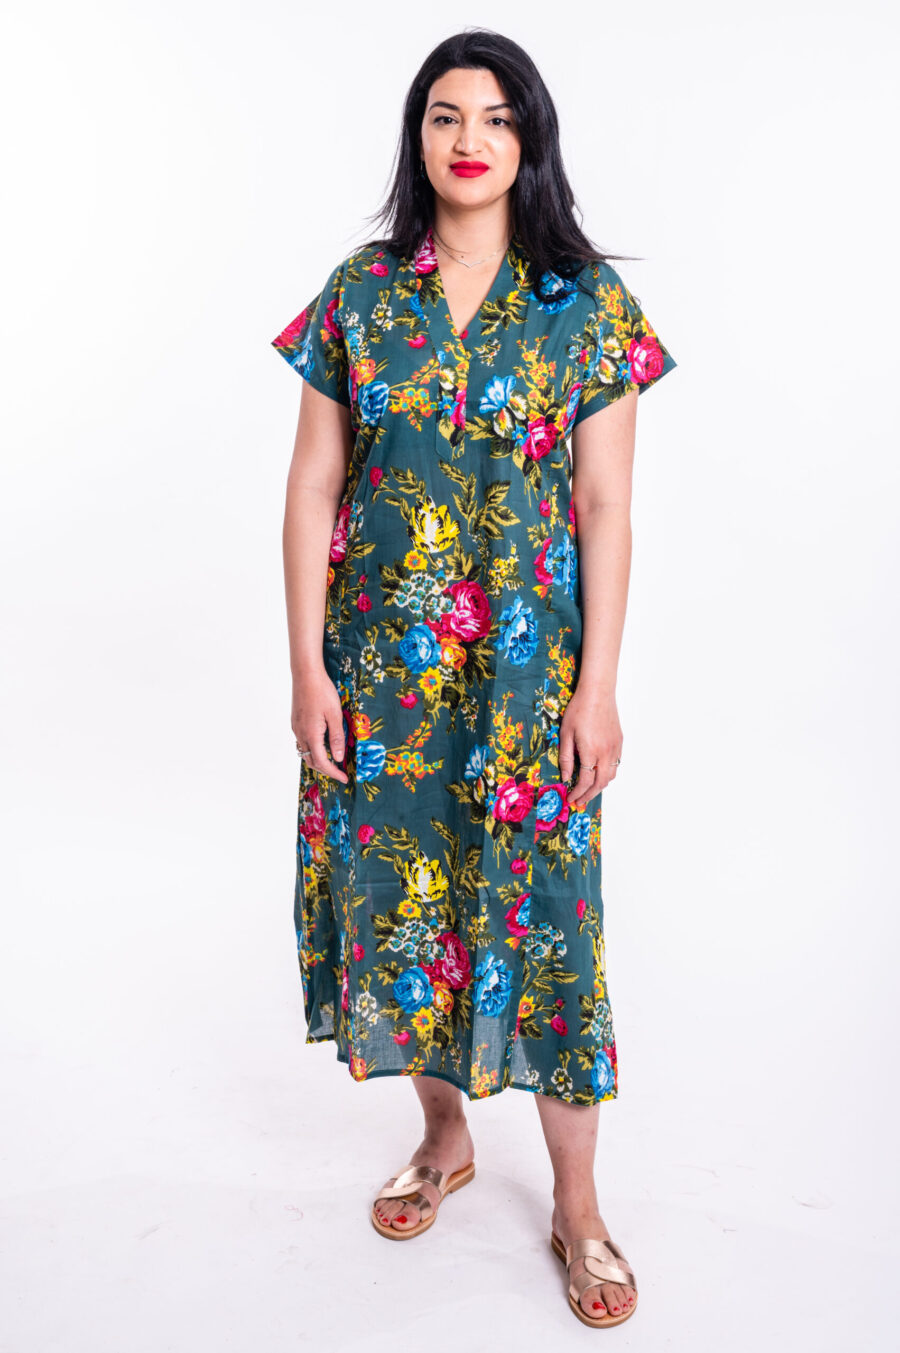 גלביה לנשים | גלבייה בעיצוב ייחודי - שמלה ירוקה עם הדפס פרחים צבעוני